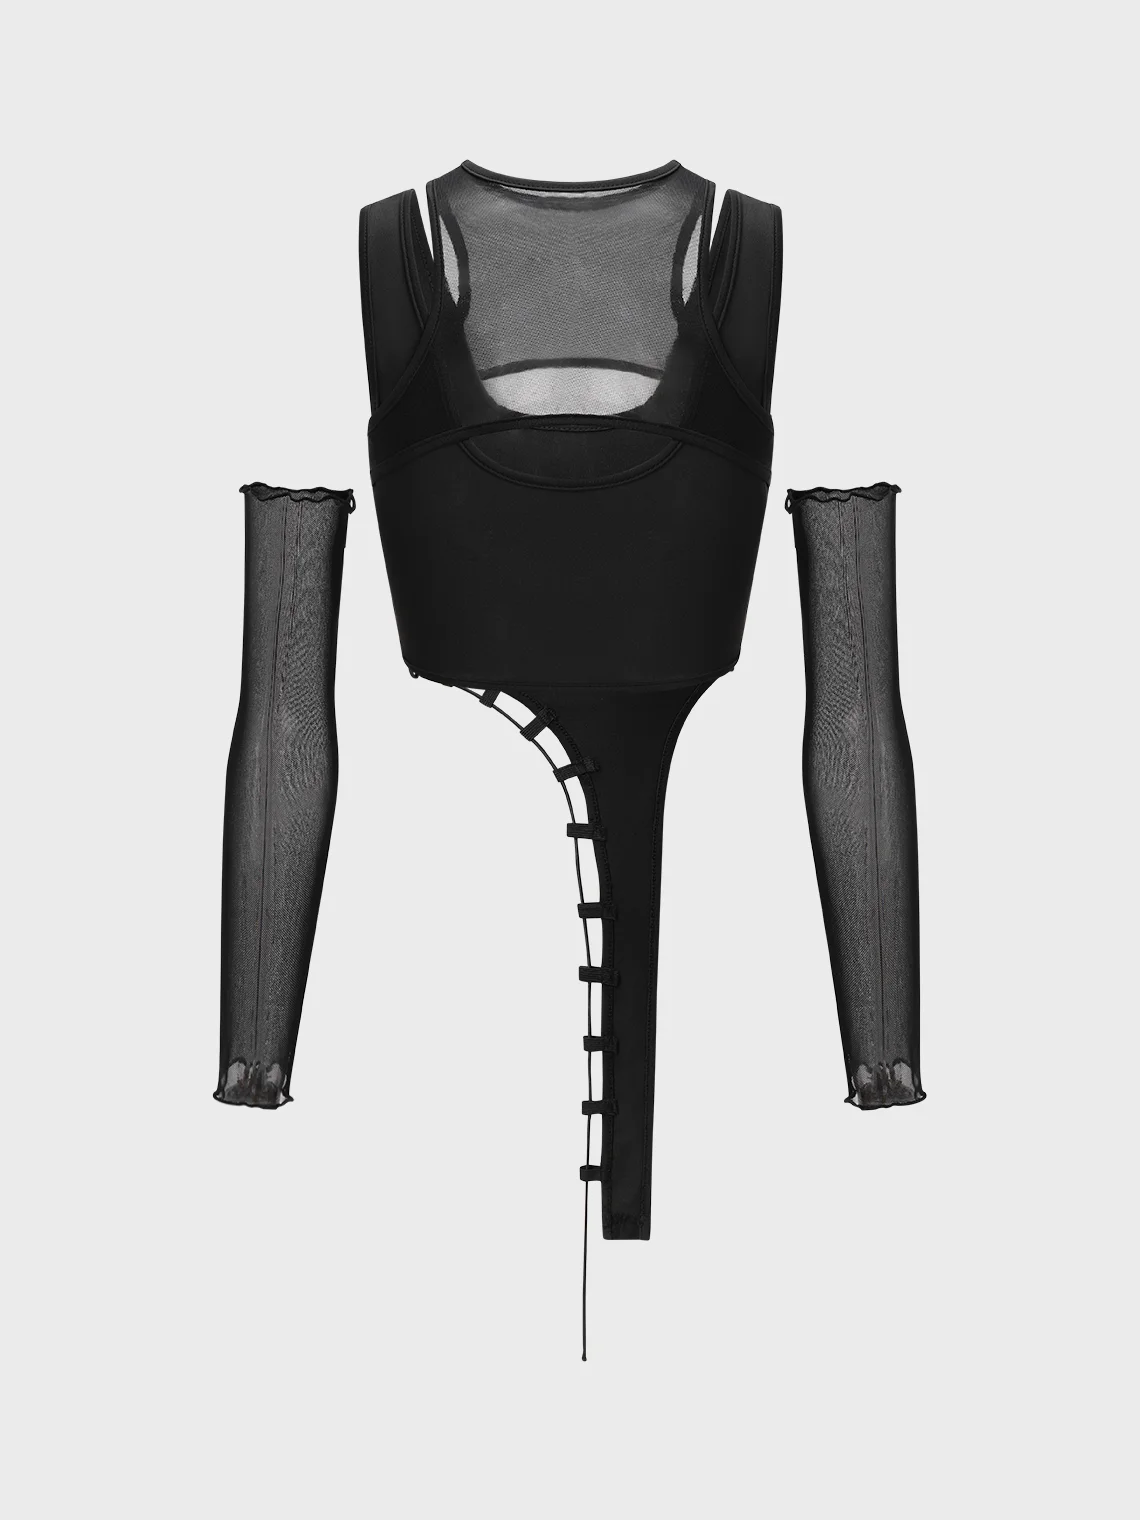 【Final Sale】Edgy Black Mesh Asymmetrical Design Tiered Design Cyberpunk Top Women Top